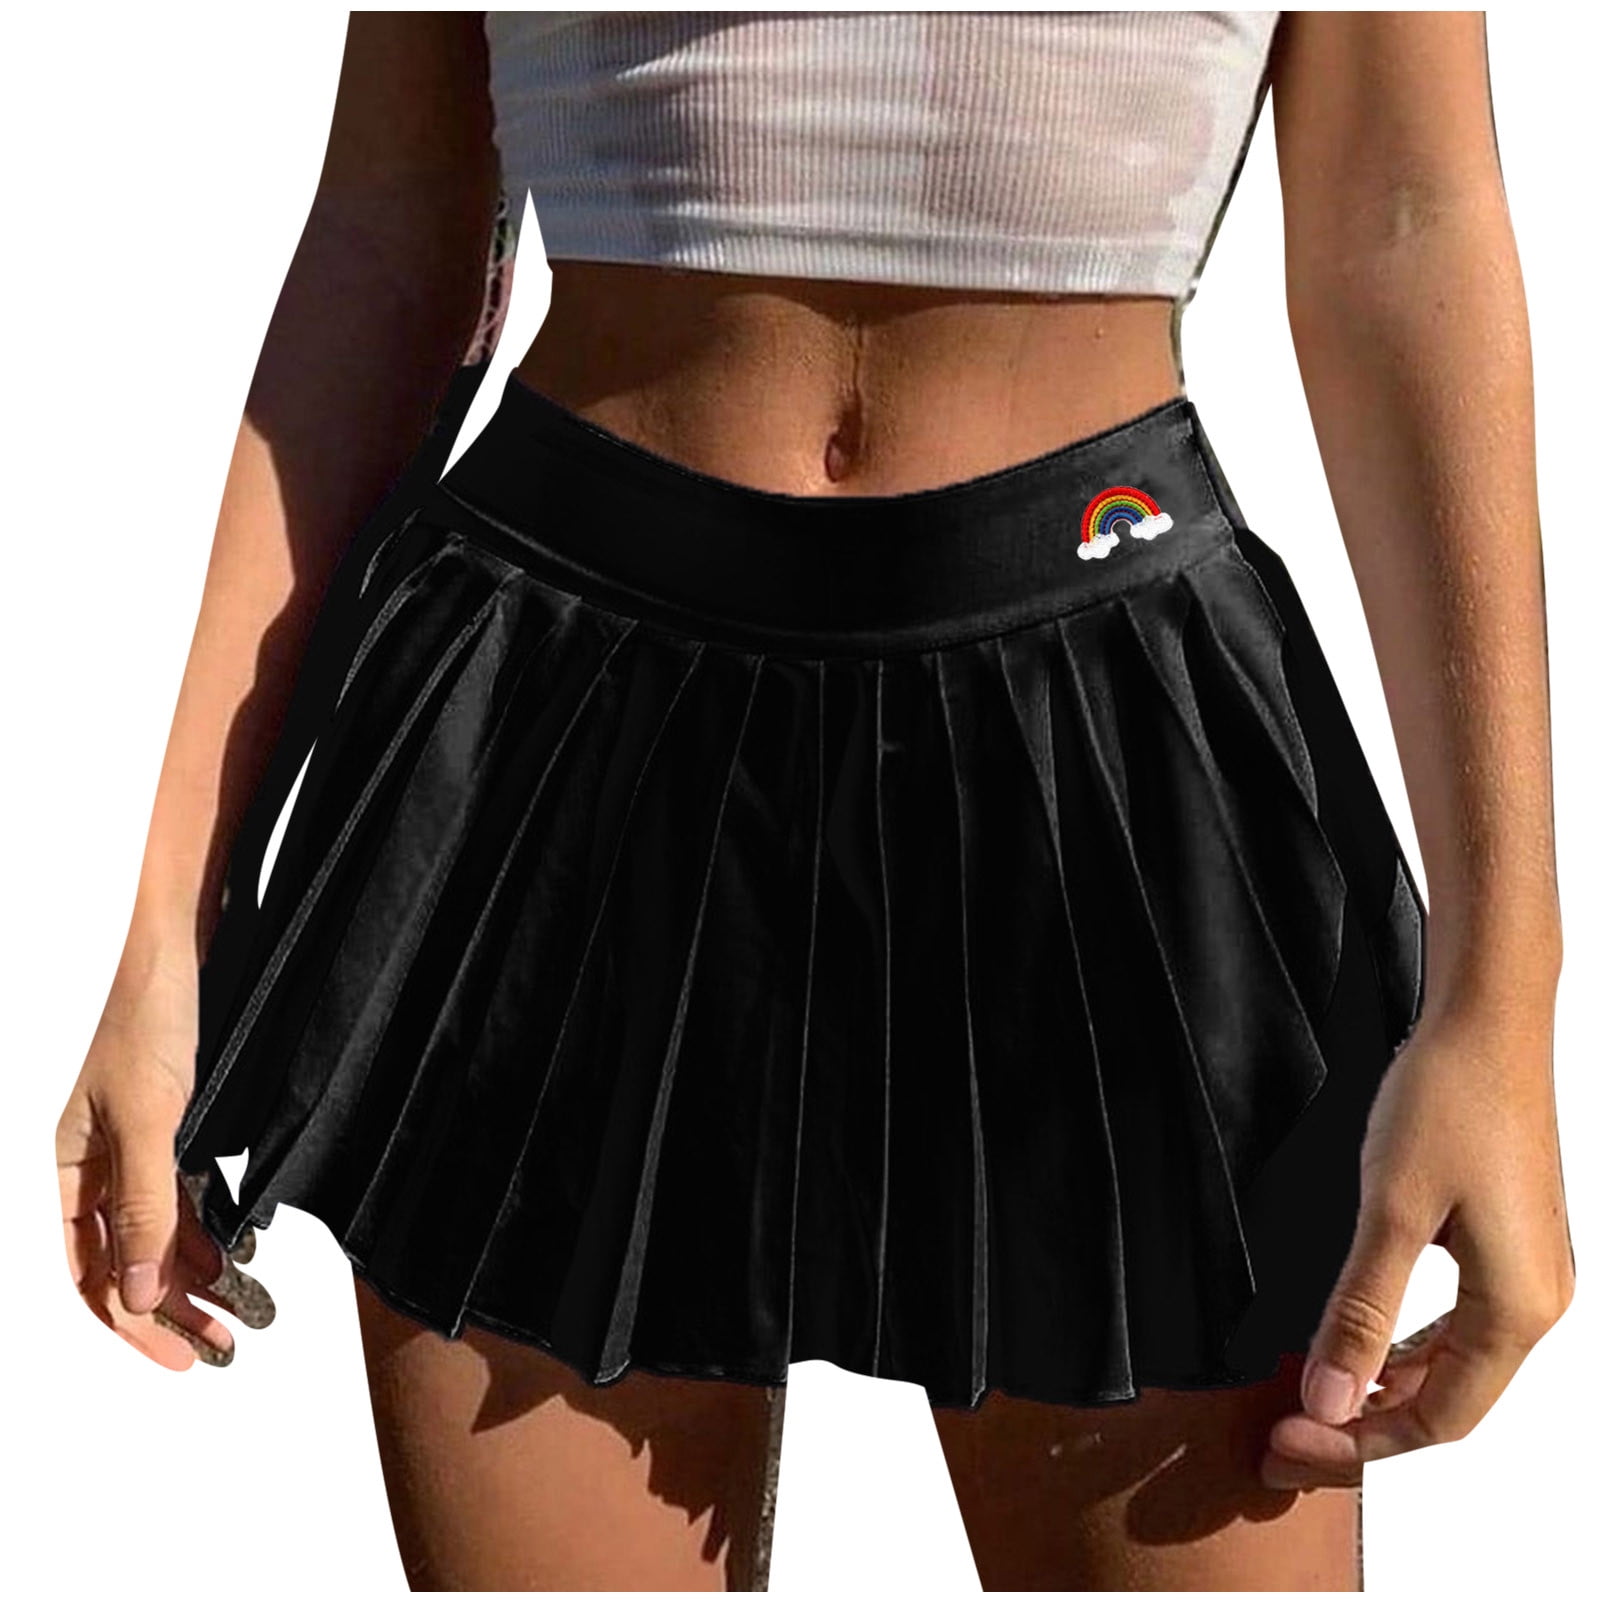 Ski Skirt Zipper Side Pleated Skirt Short Skirt Women's Cute Thin ...